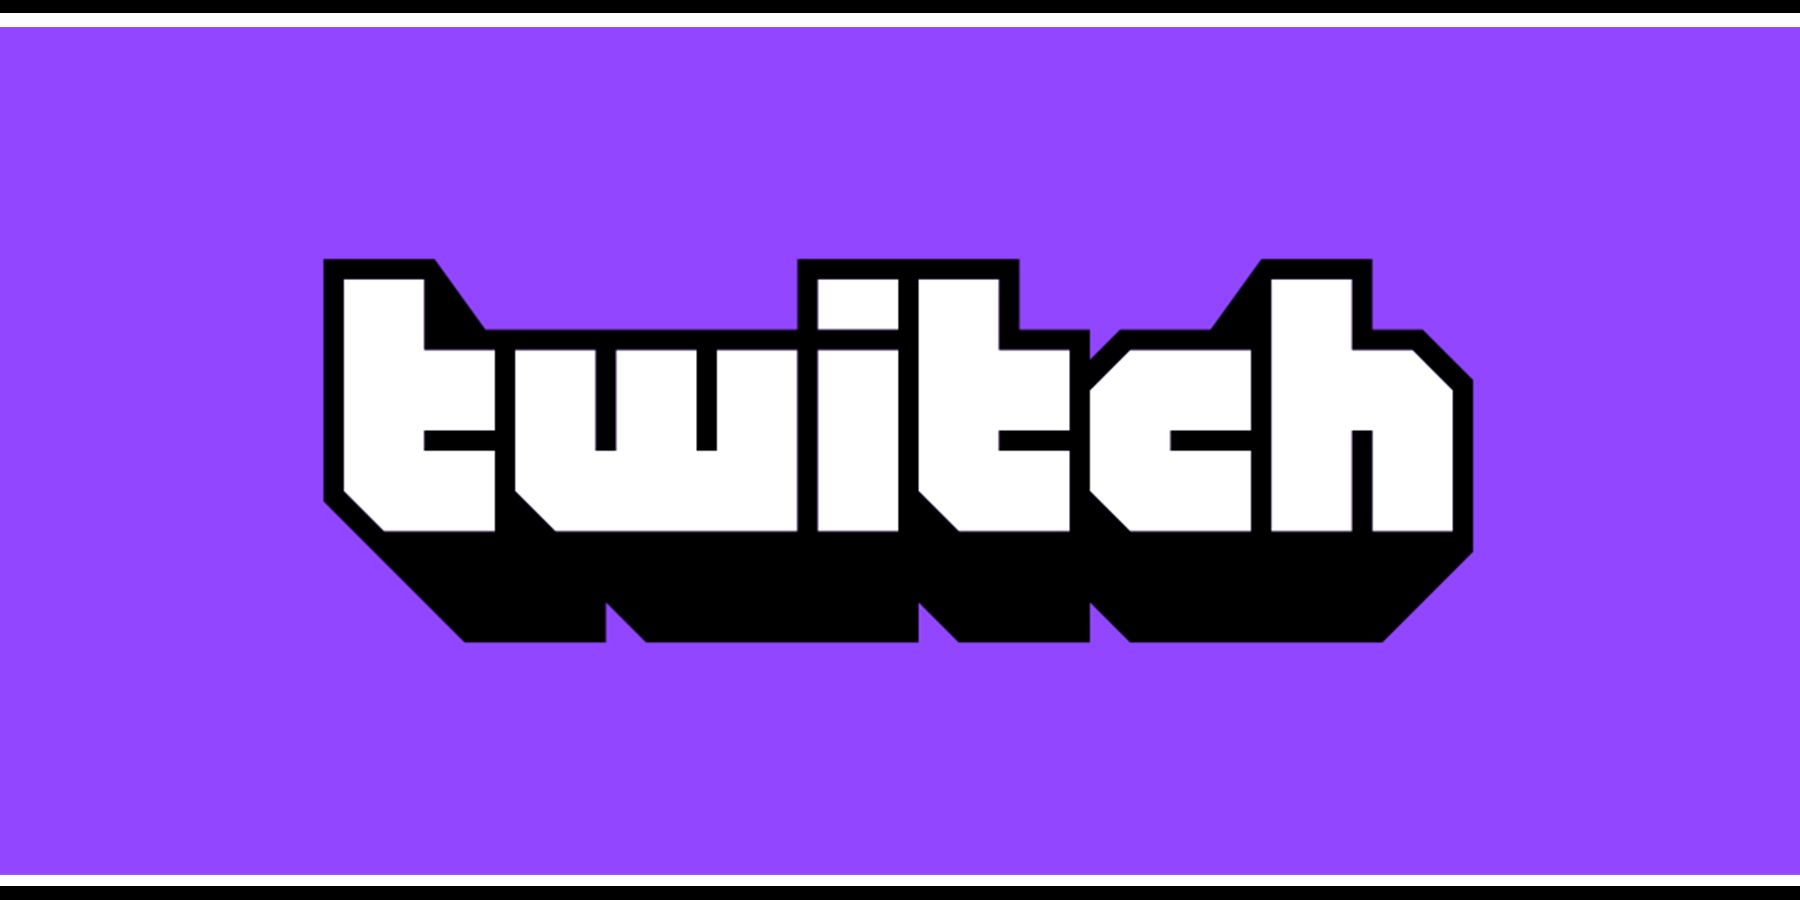 twitch logo with stripes